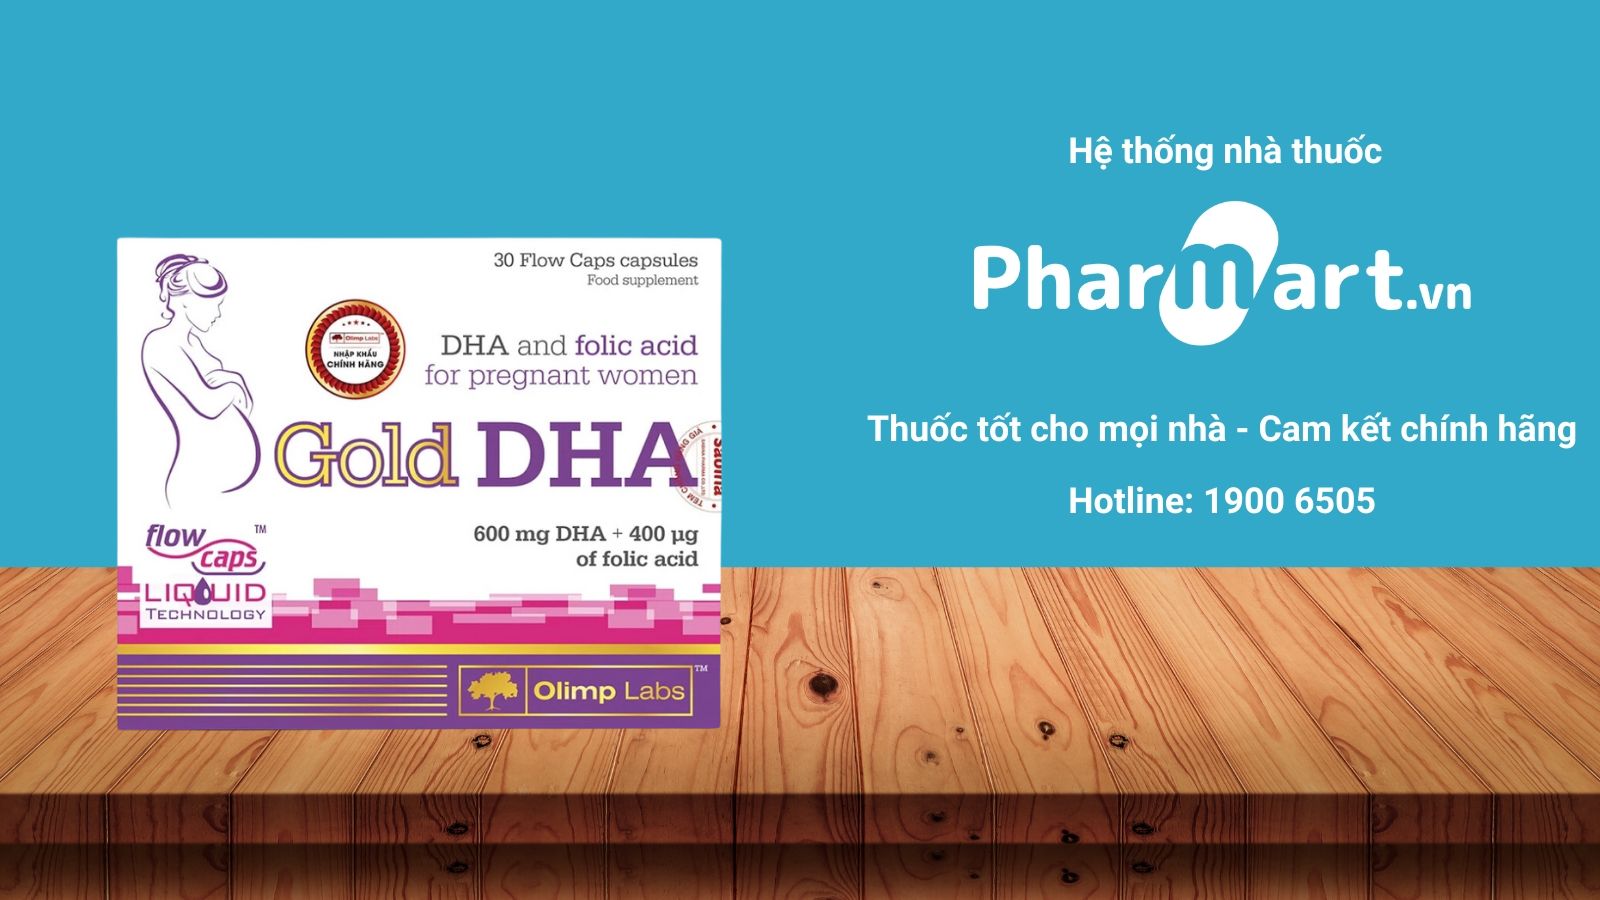 Mua Chela Gold DHA chính hãng tại Pharmart.vn